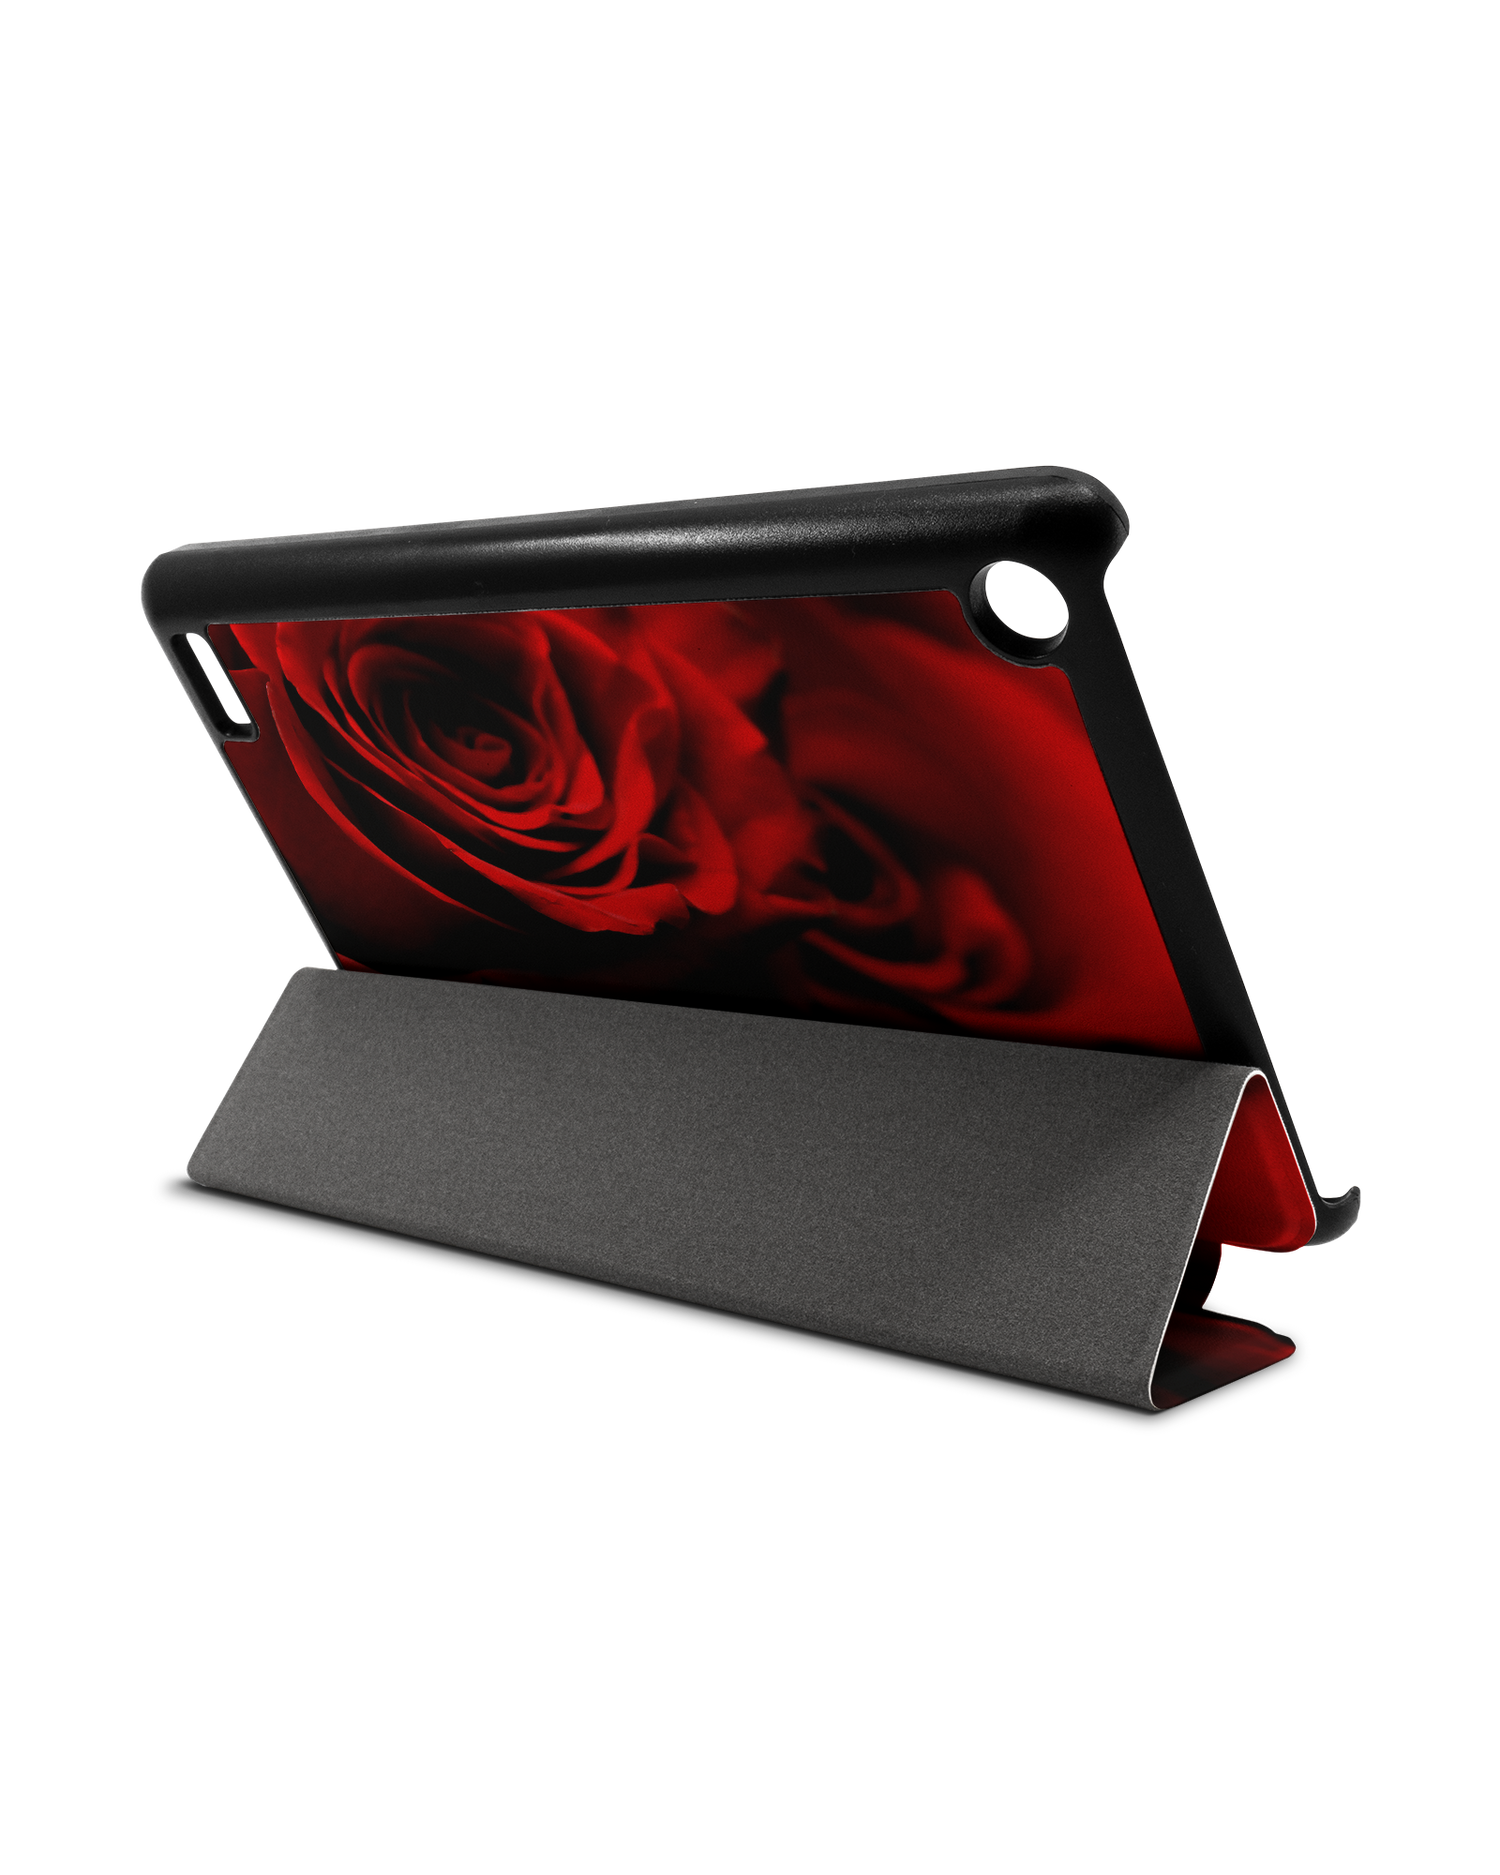 Red Roses Tablet Smart Case für Amazon Fire 7: Aufgestellt im Querformat